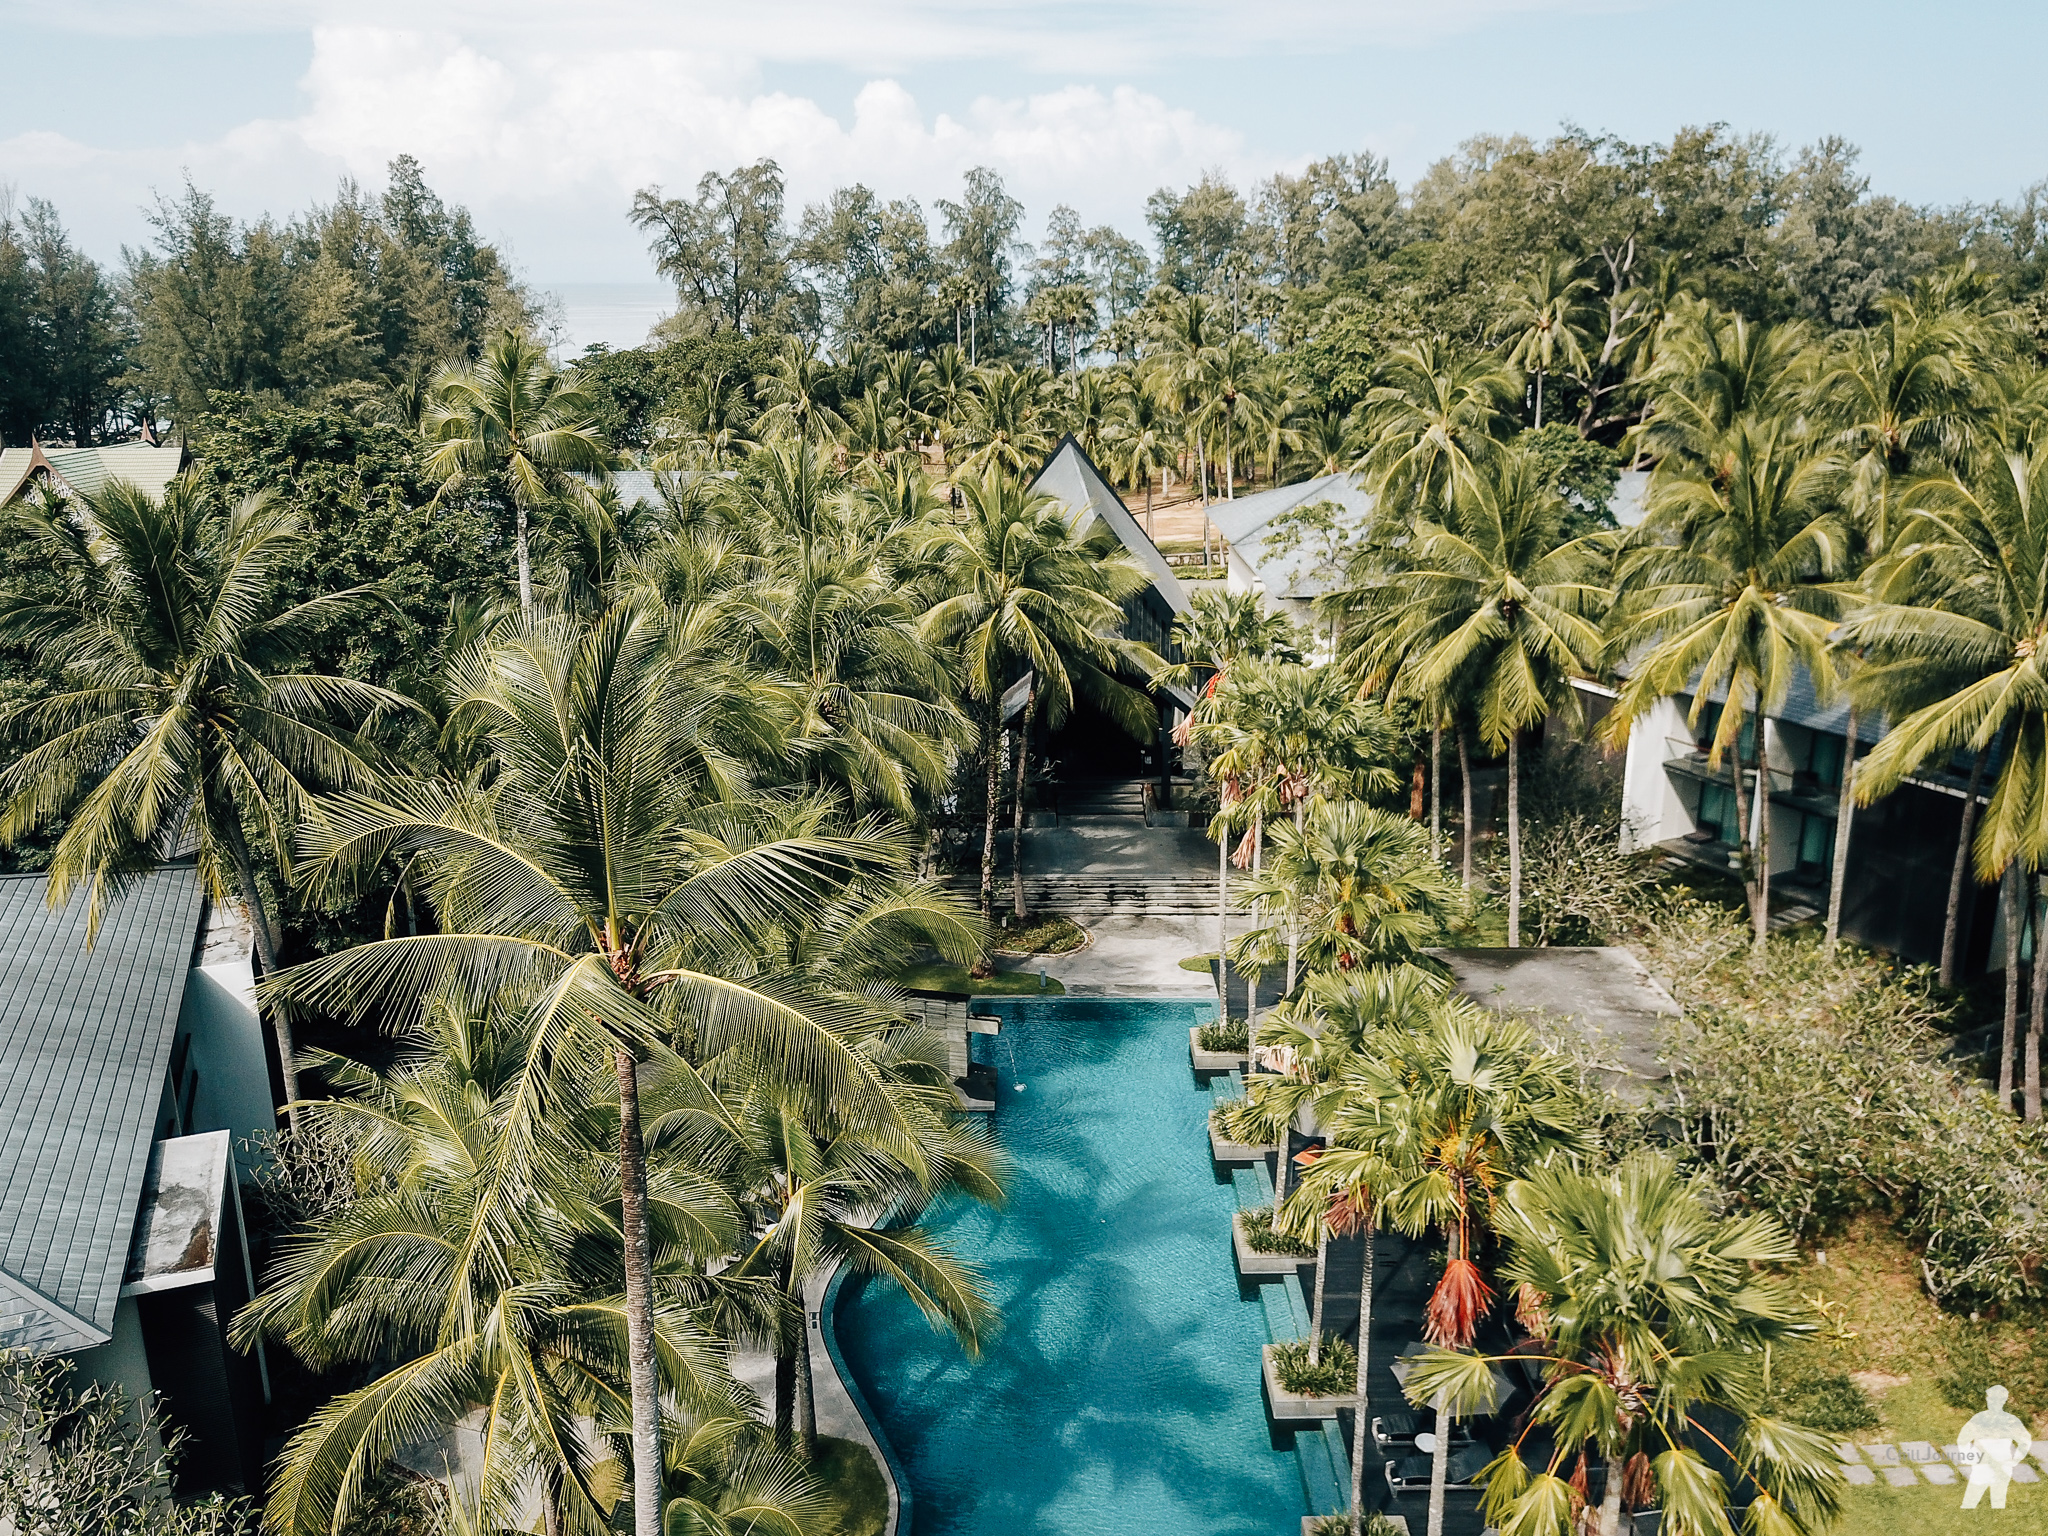 รีวิว Twin plam phuket โรงแรมภูเก็ตที่อยากบอกต่อ ท้าชนได้ทุกที่ในภูเก็ต ดีเกินราคาไปมาก – Chill Journey | Thai Travel & Lifestyle blog